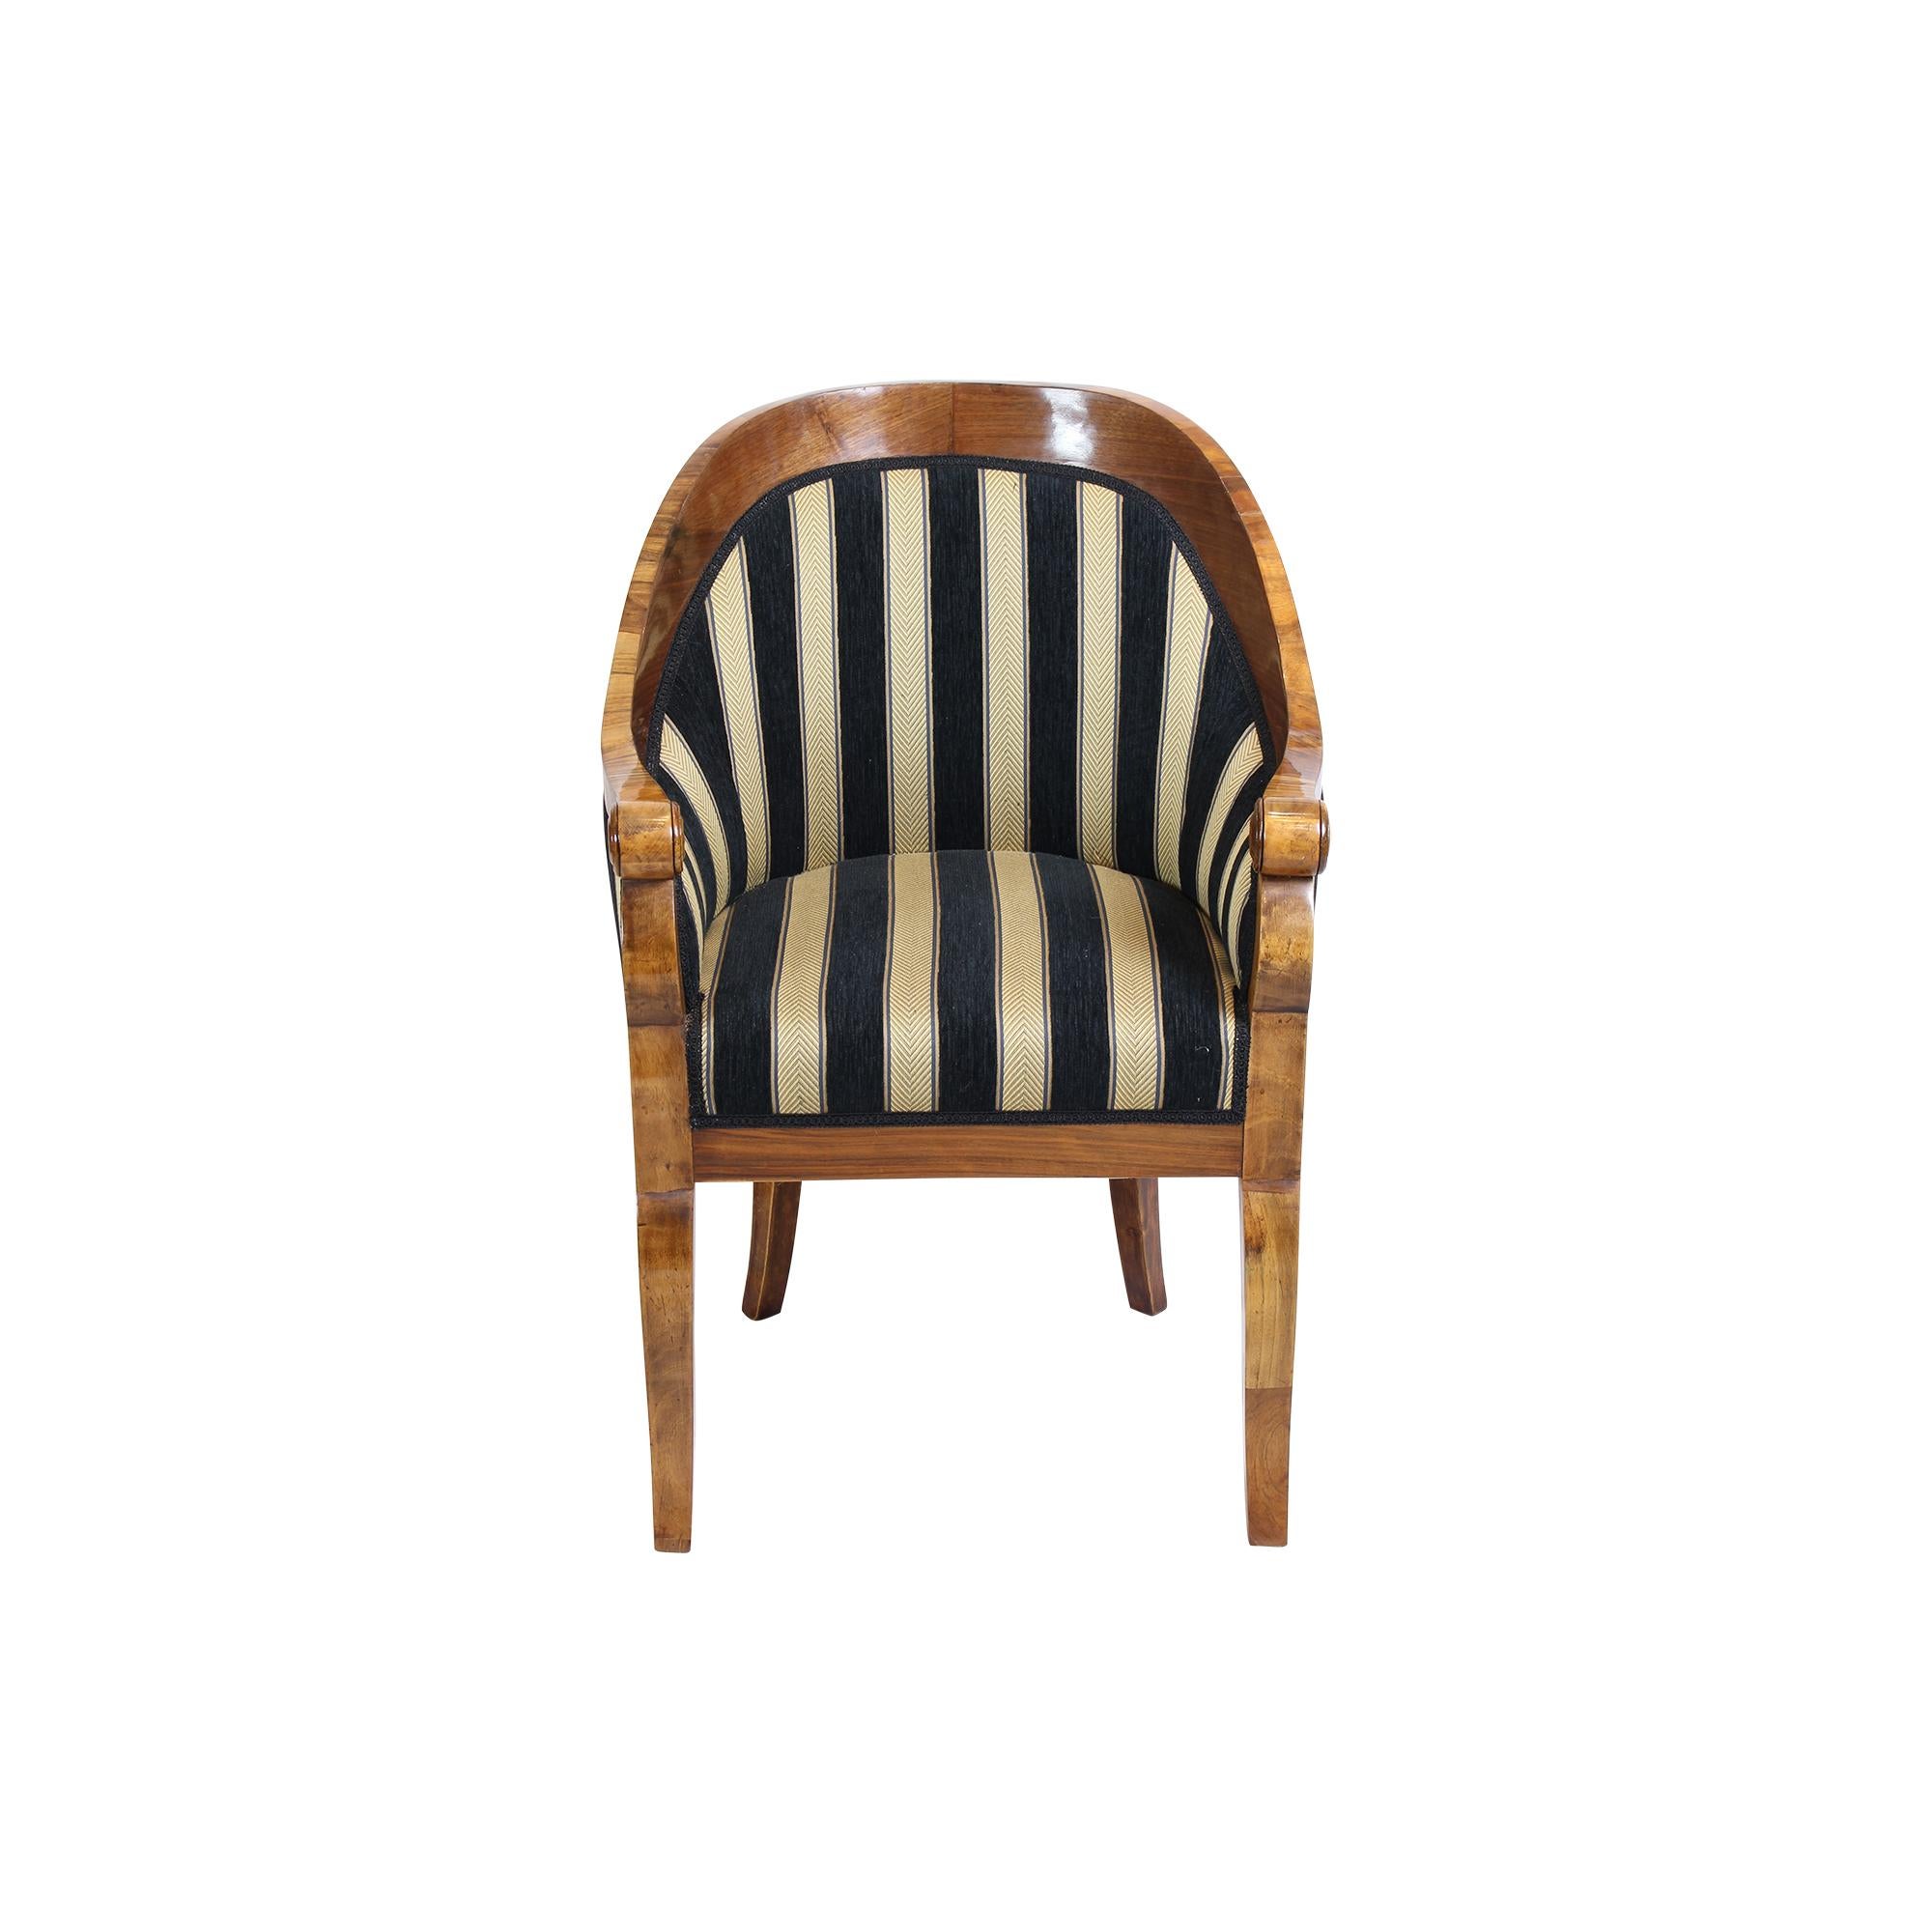 Eleganter original Biedermeier Bergere Stuhl aus Wien um 1825 in Nussbaumfurnier.
Sehr klassizistisches Design und tolle Verarbeitung, der Stuhl ist neu gepolstert und mit neuem Stoff bezogen. Schöner kleiner Beregeren Sitz. Französisch poliert mit